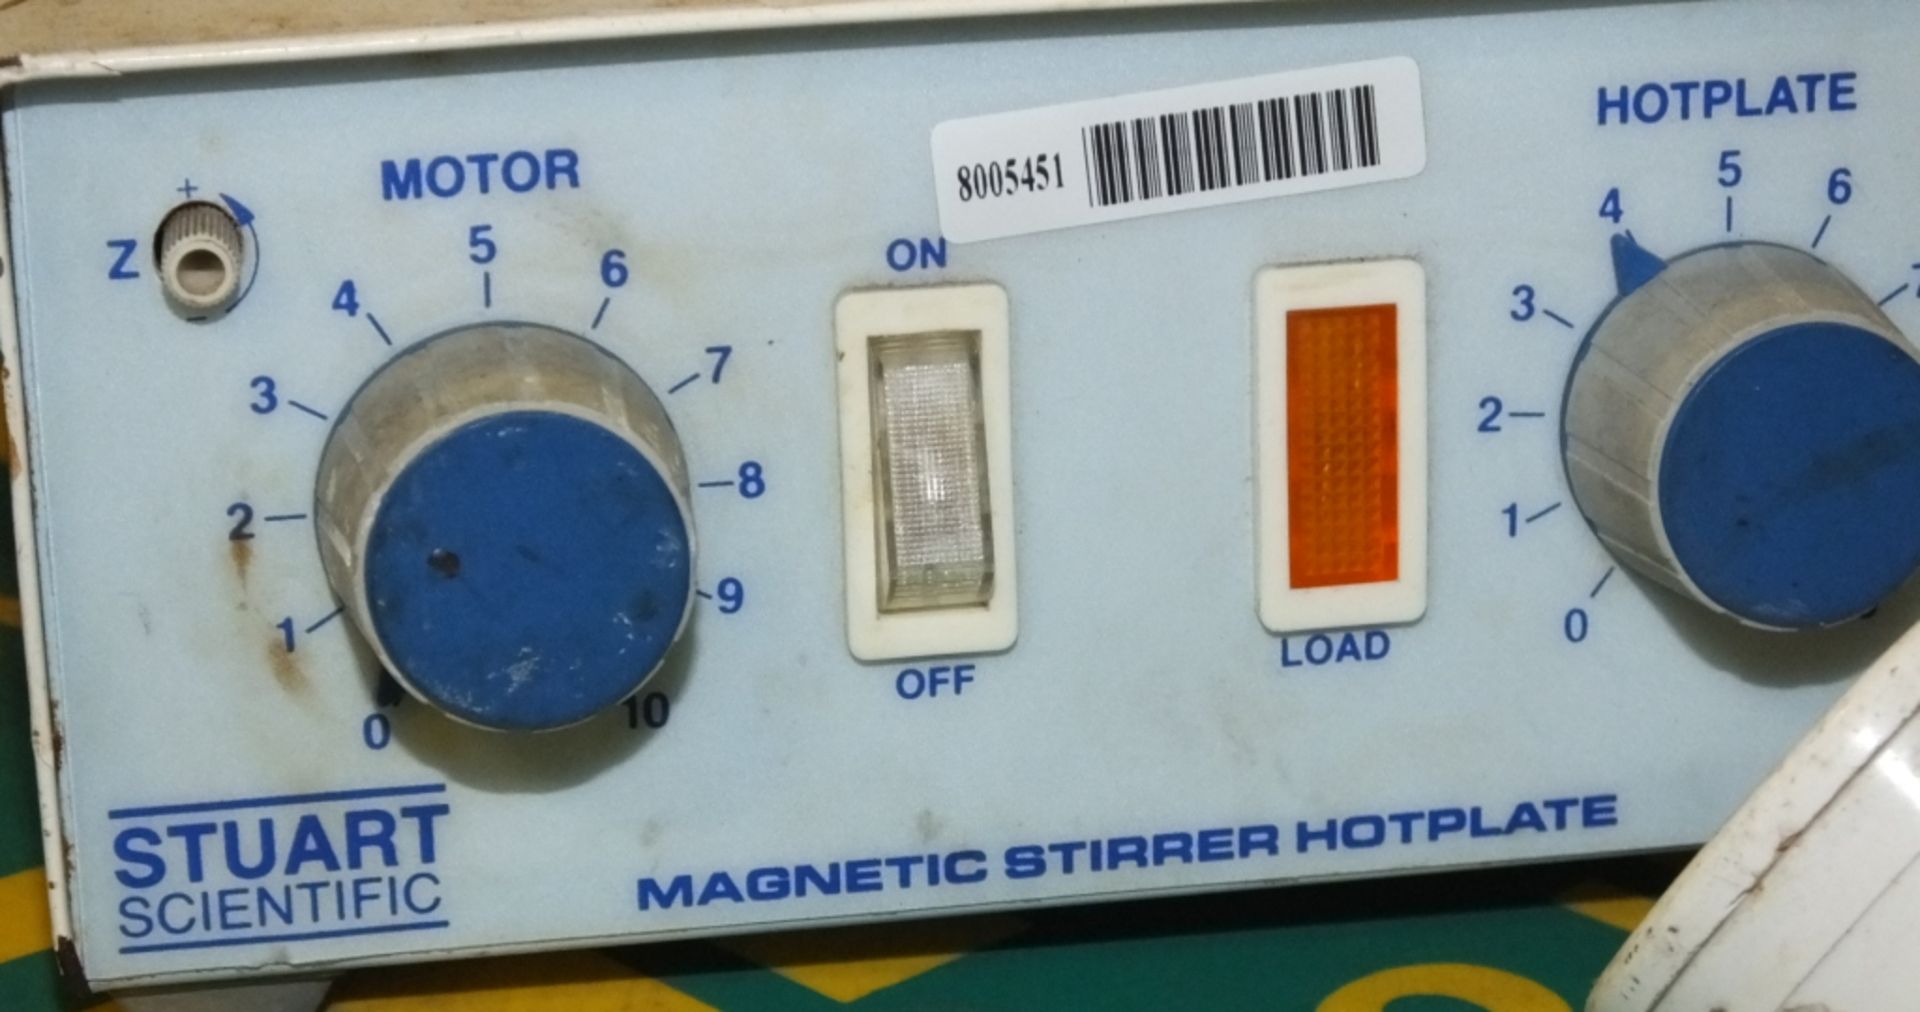 Stuart Scientific Magentic Stirrer Hotplate - Image 2 of 2